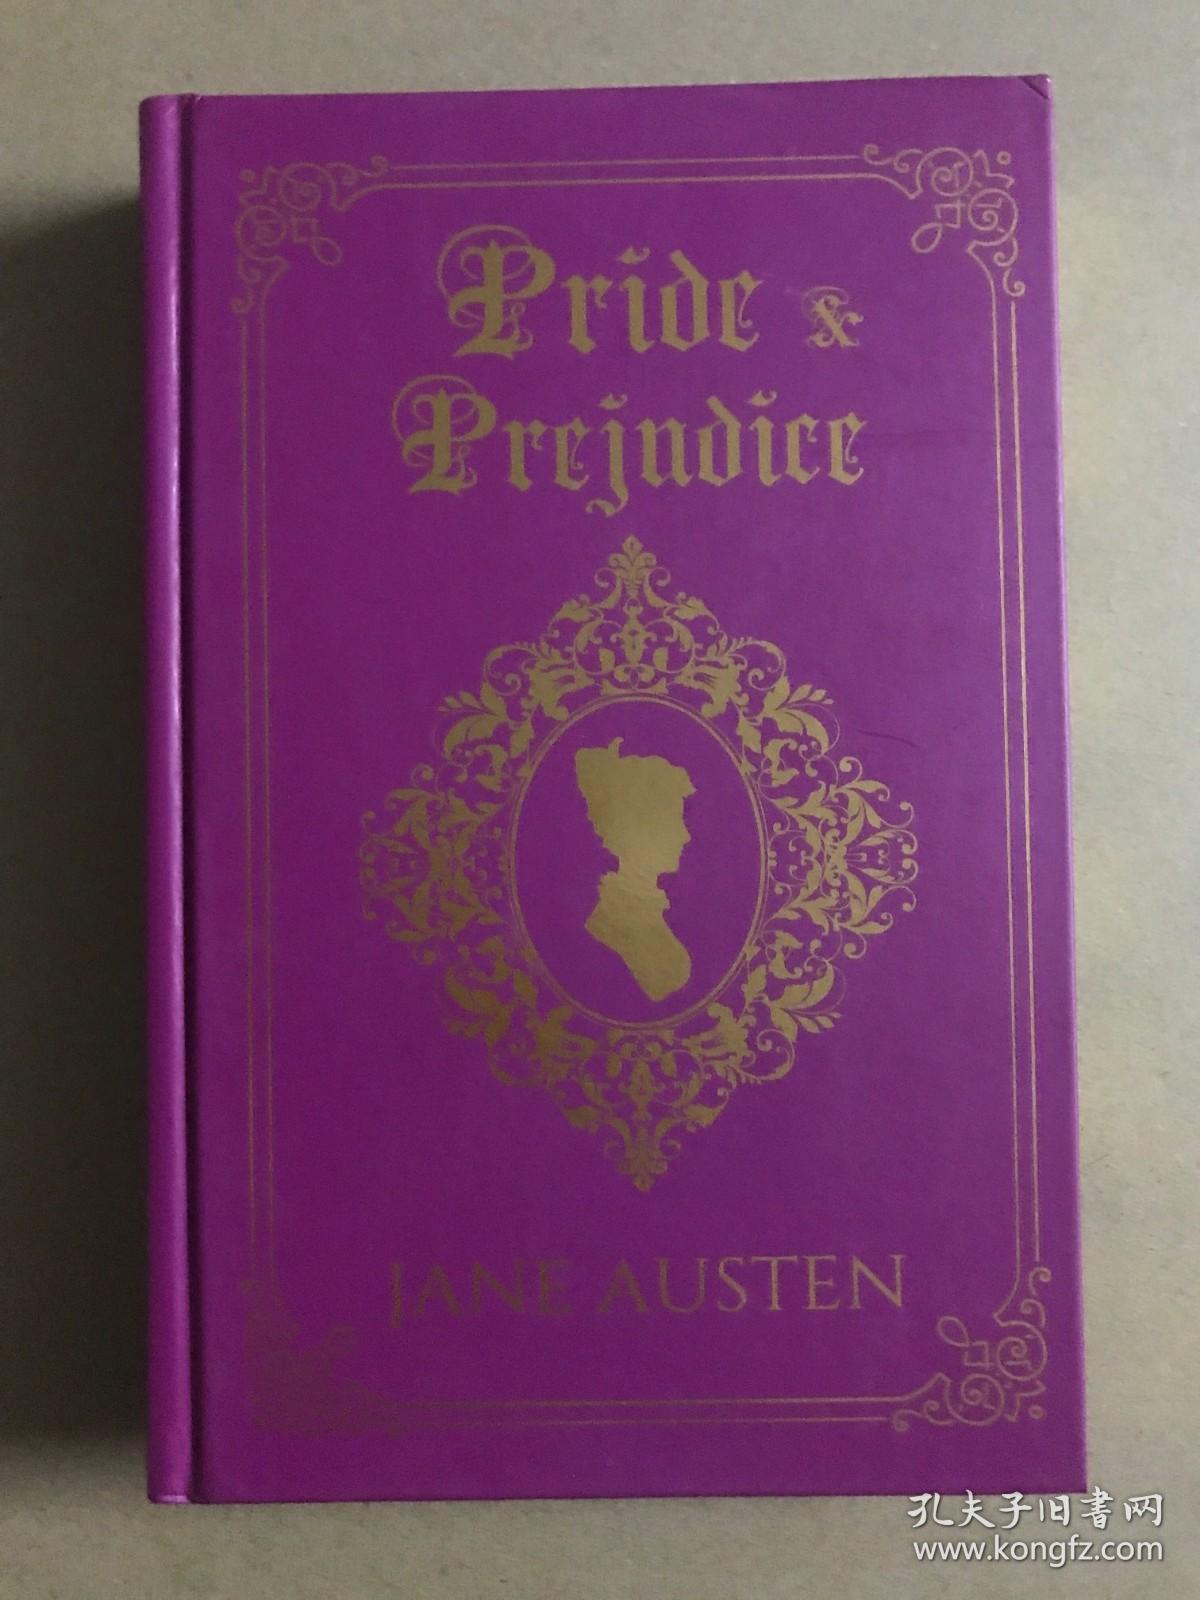 Pride & Prejudice (Deluxe Edition)Jane Austin经典作品英文精装金边珍藏版傲慢与偏见